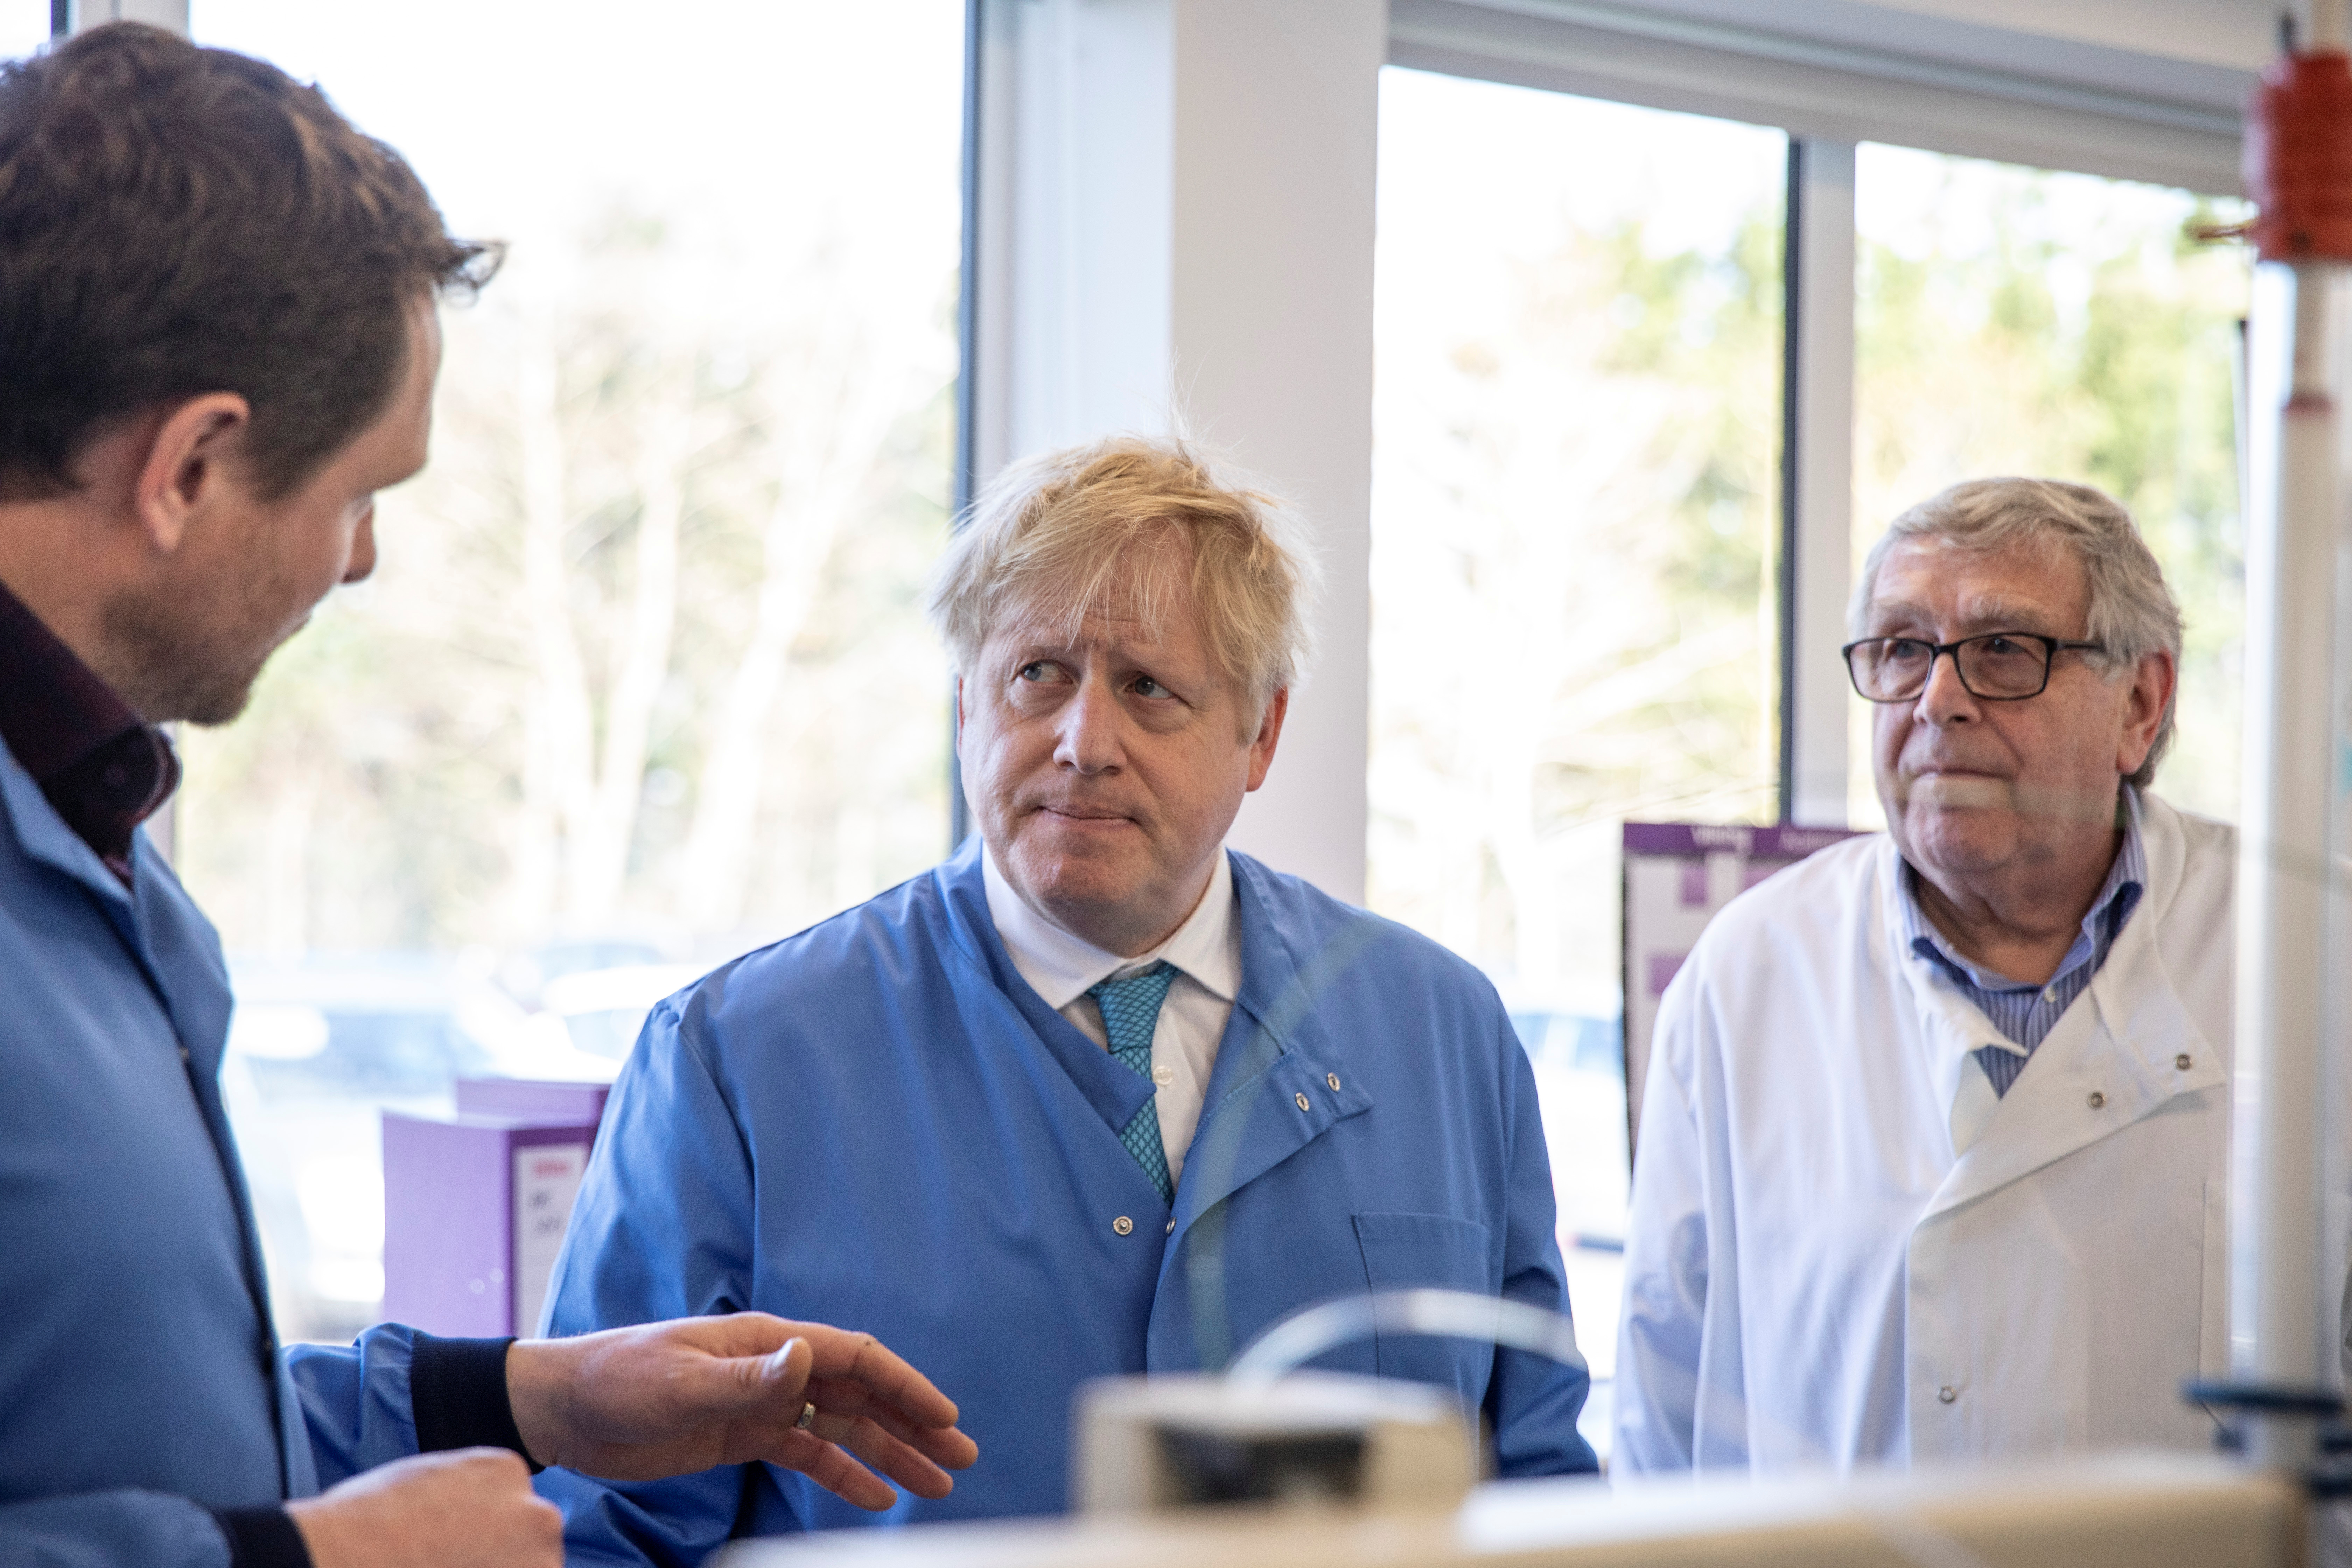 Boris Johnson salió del hospital tras estar internado por coronavirus